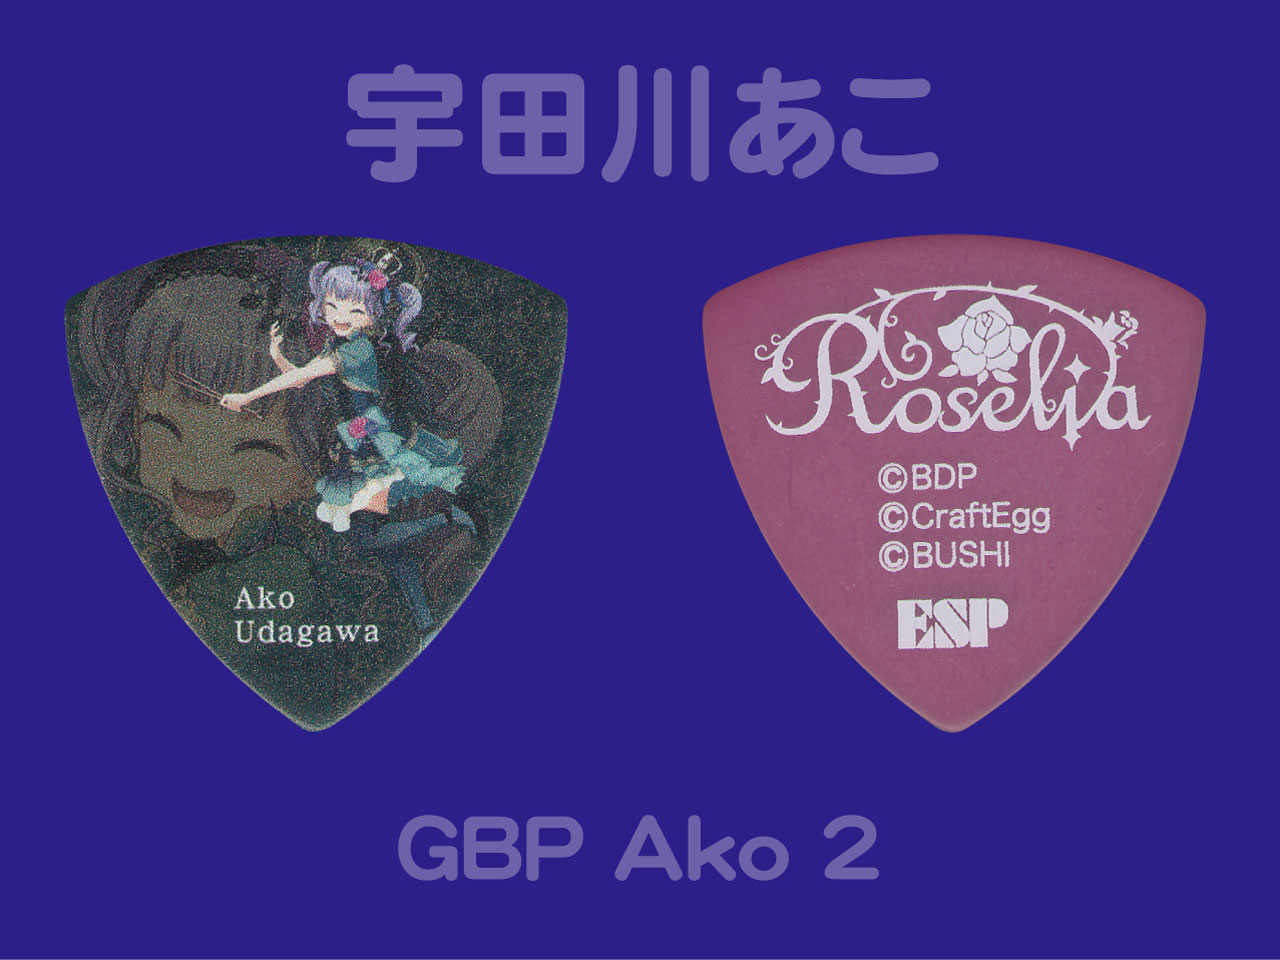 【ESP×BanG Dream!コラボピック】Roselia Character Pick "宇田川あこ"（GBP Ako 2）& "ハメパチ" セット